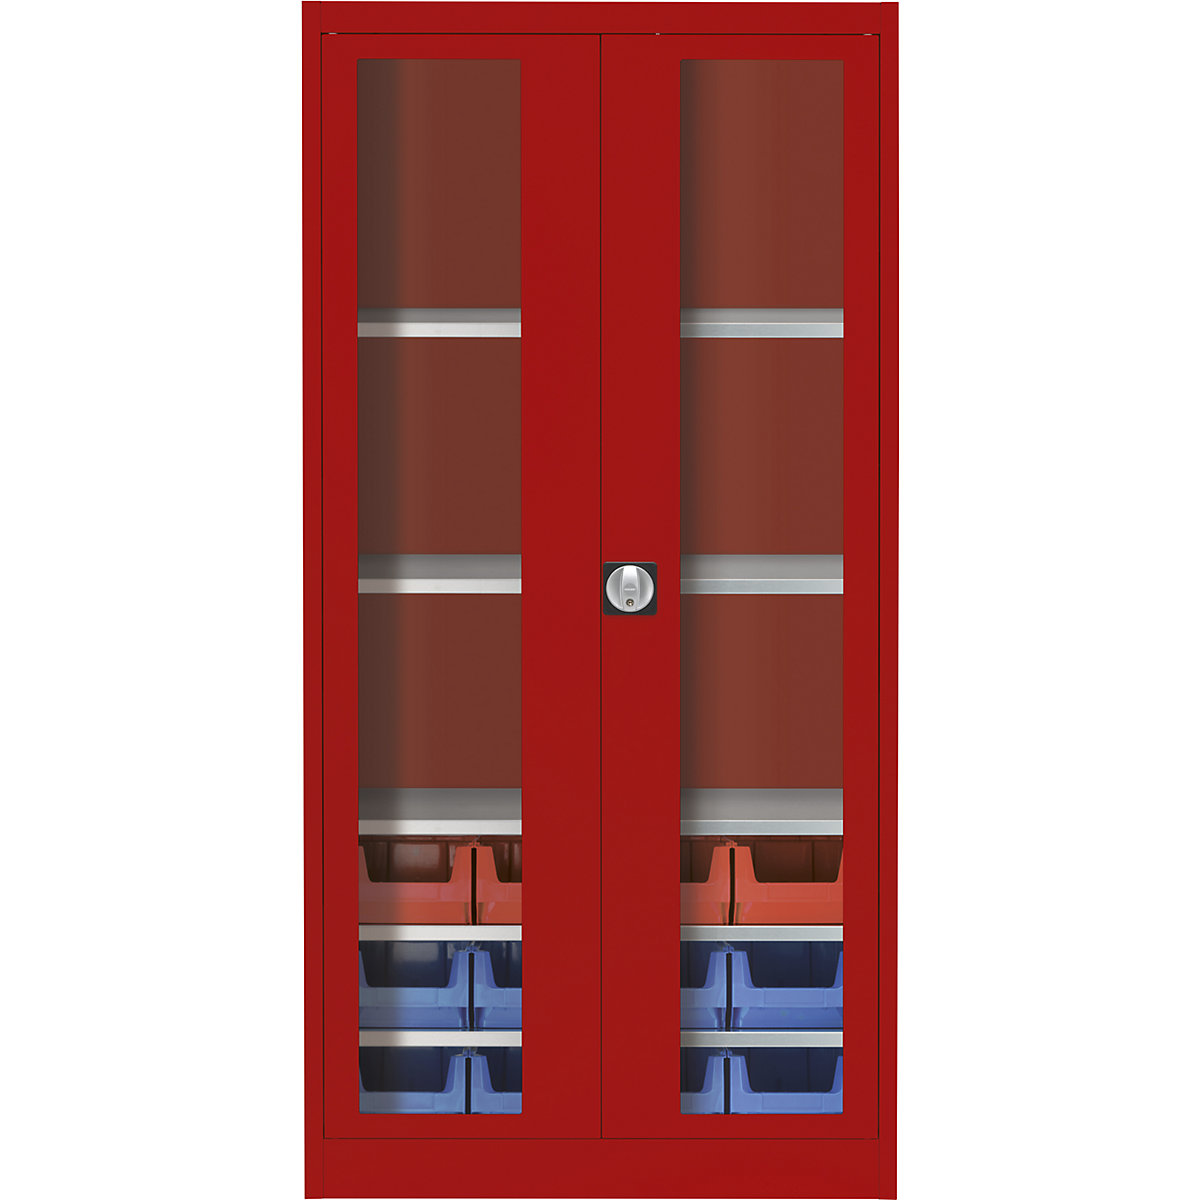 Skriňa s krídlovými dverami s priehľadným okienkom – mauser, s 12 prepravkami s viditeľným obsahom, ohnivo červená-4